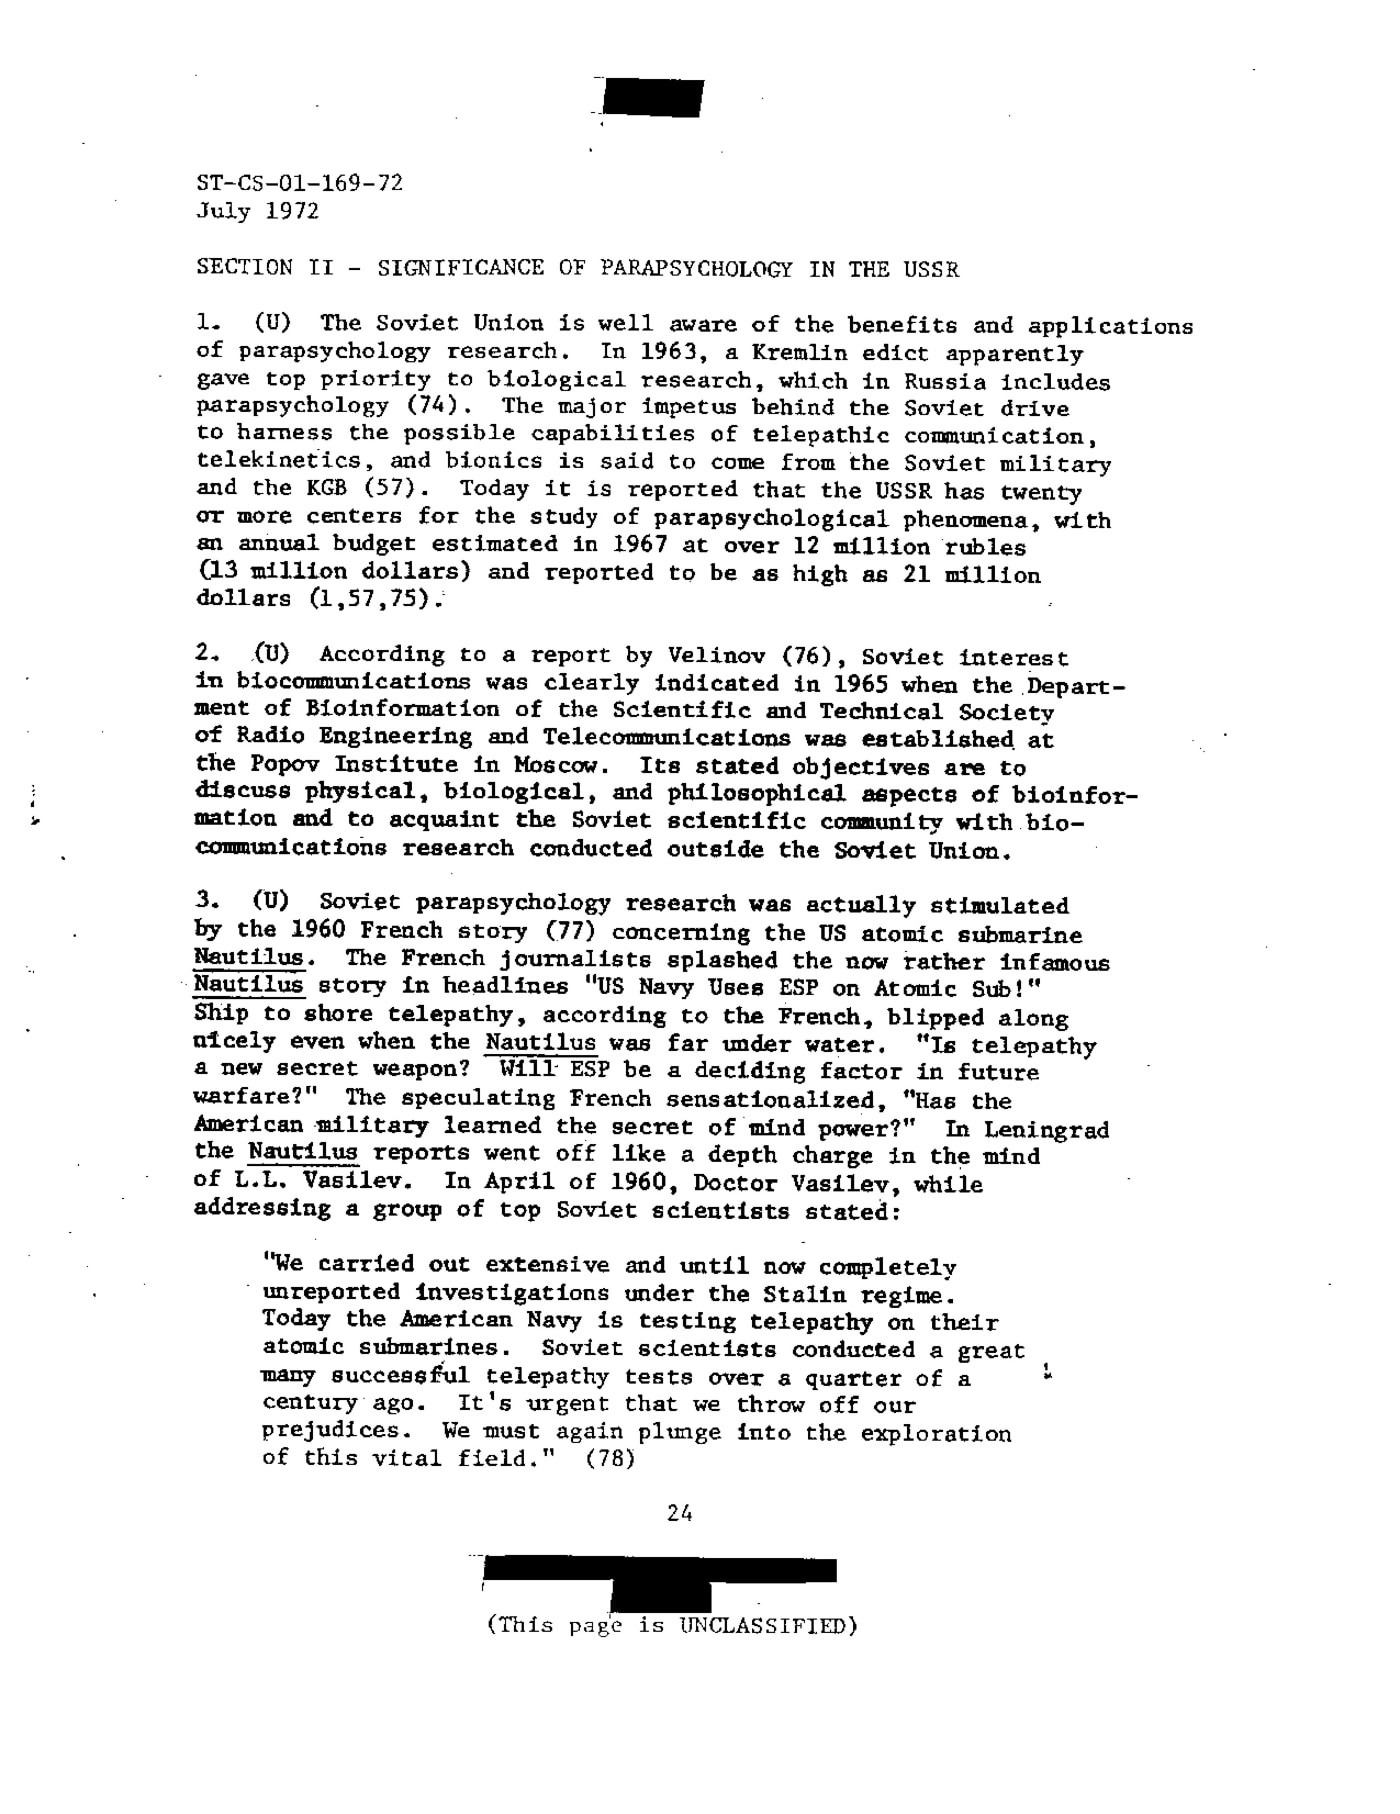 Informe de julio de 1972 de la Agencia de Inteligencia de la Defensa de EE UU sobre el experimento del 'Nautilus'.